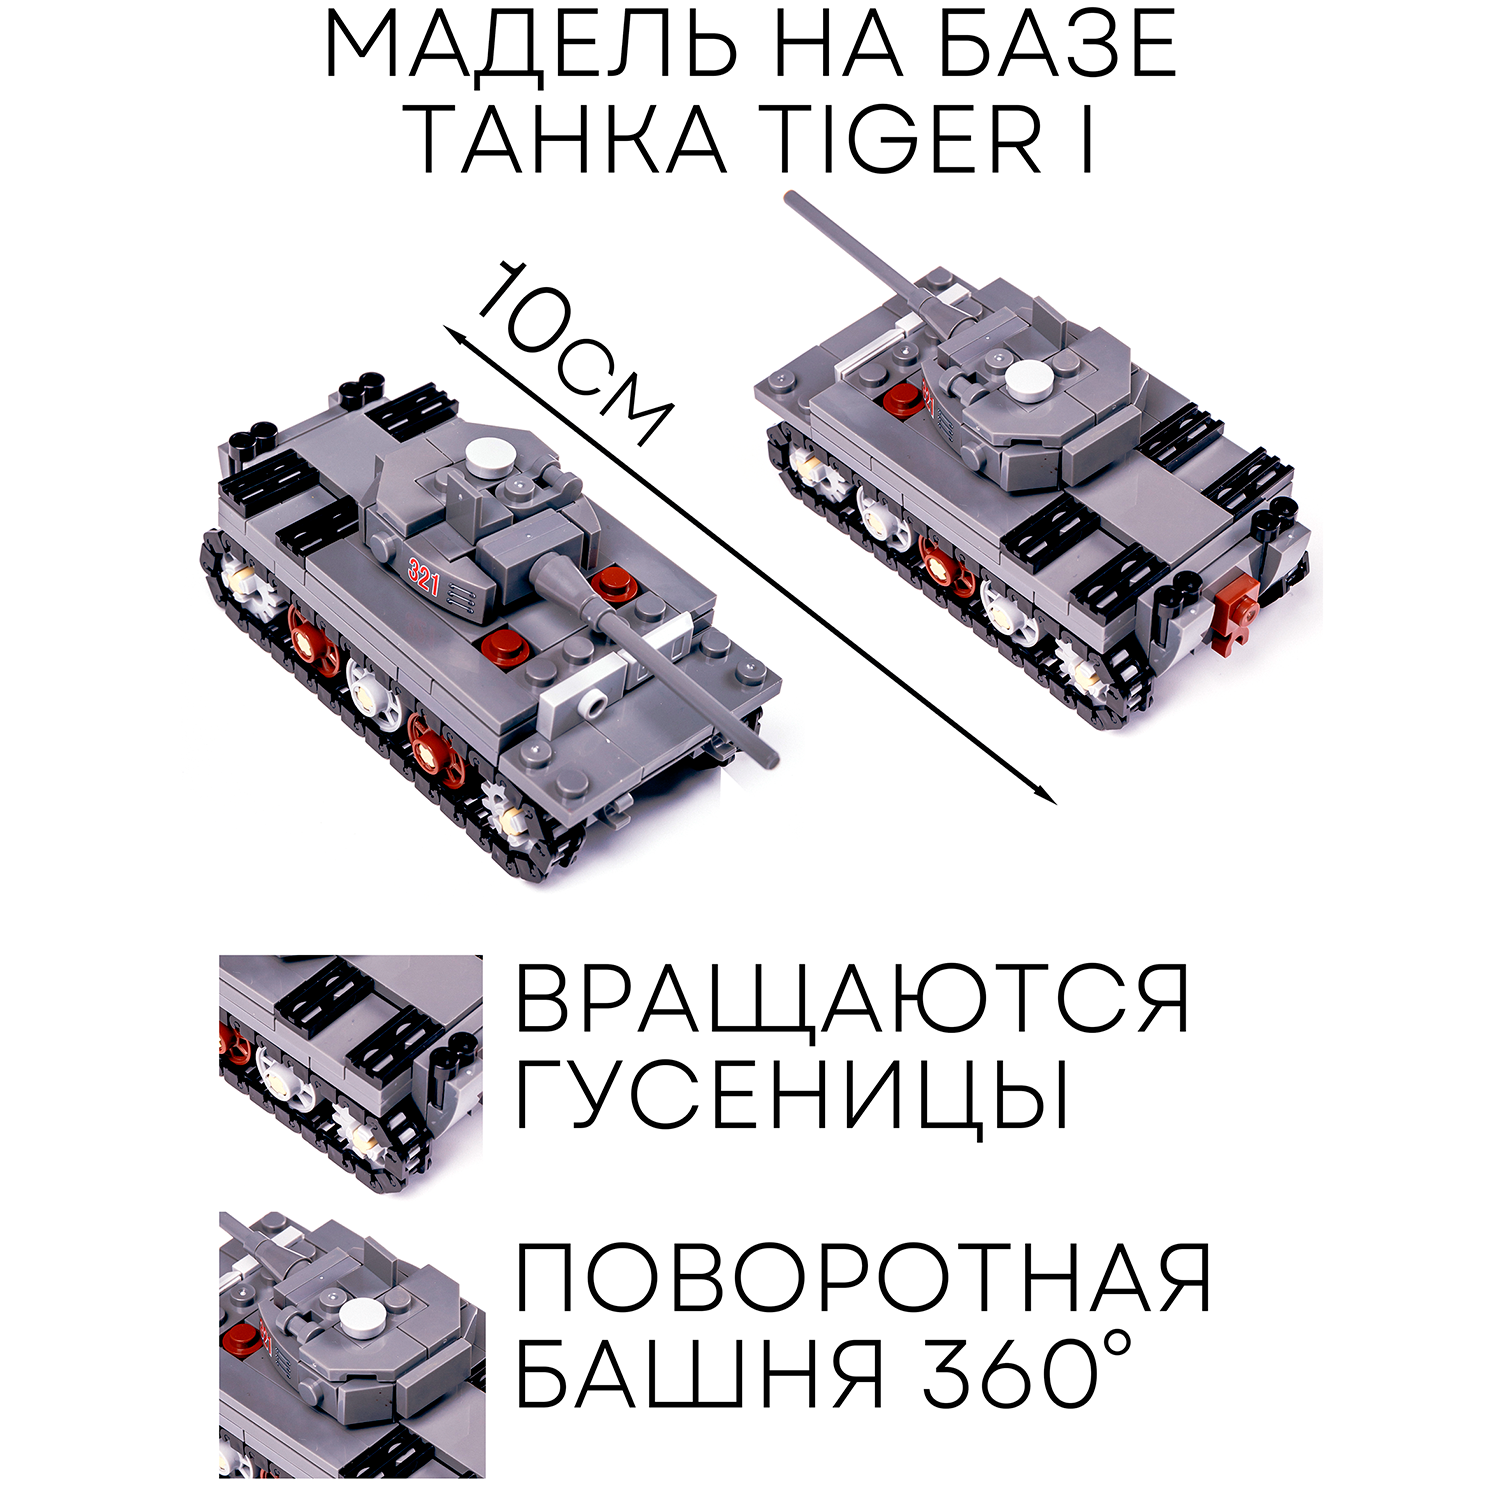 Конструктор BAZUMI Большой набор военных танков 8 в 1 с фигурками для мальчиков - фото 2